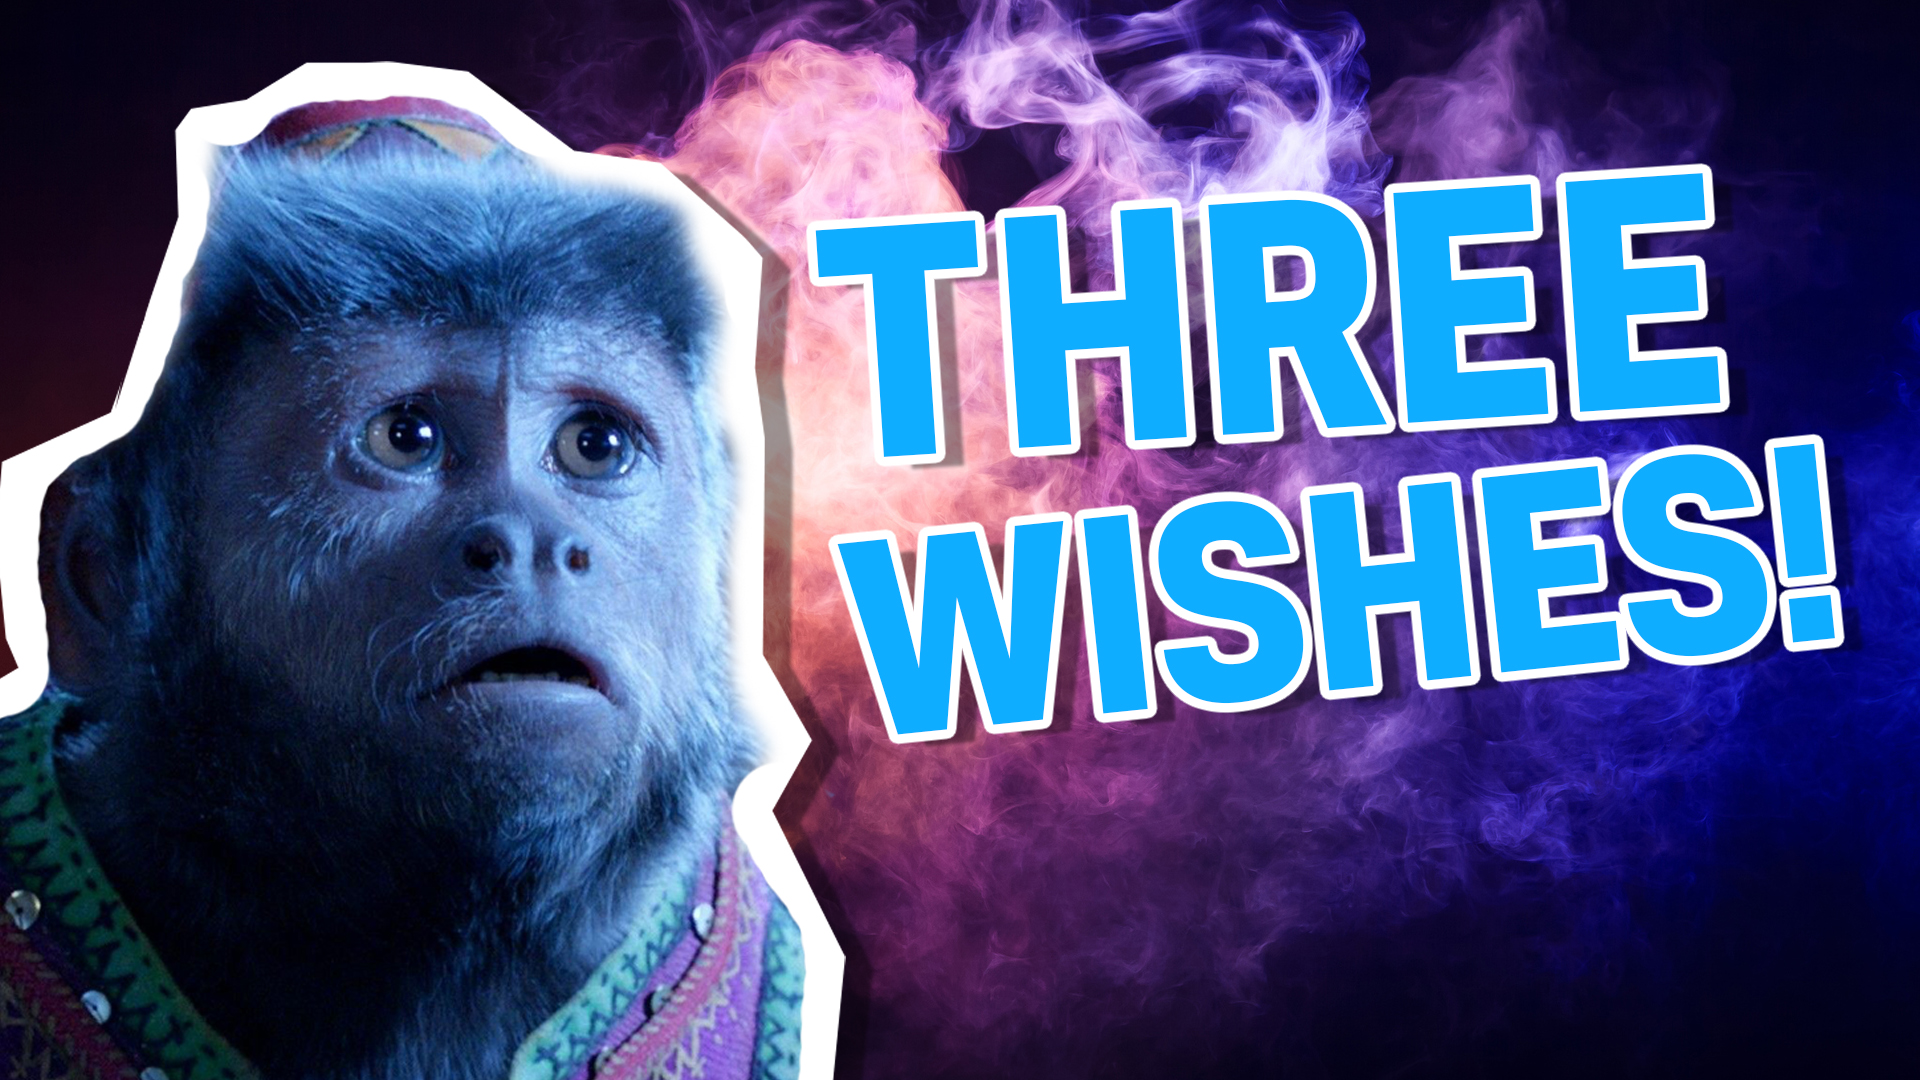 Three wishes